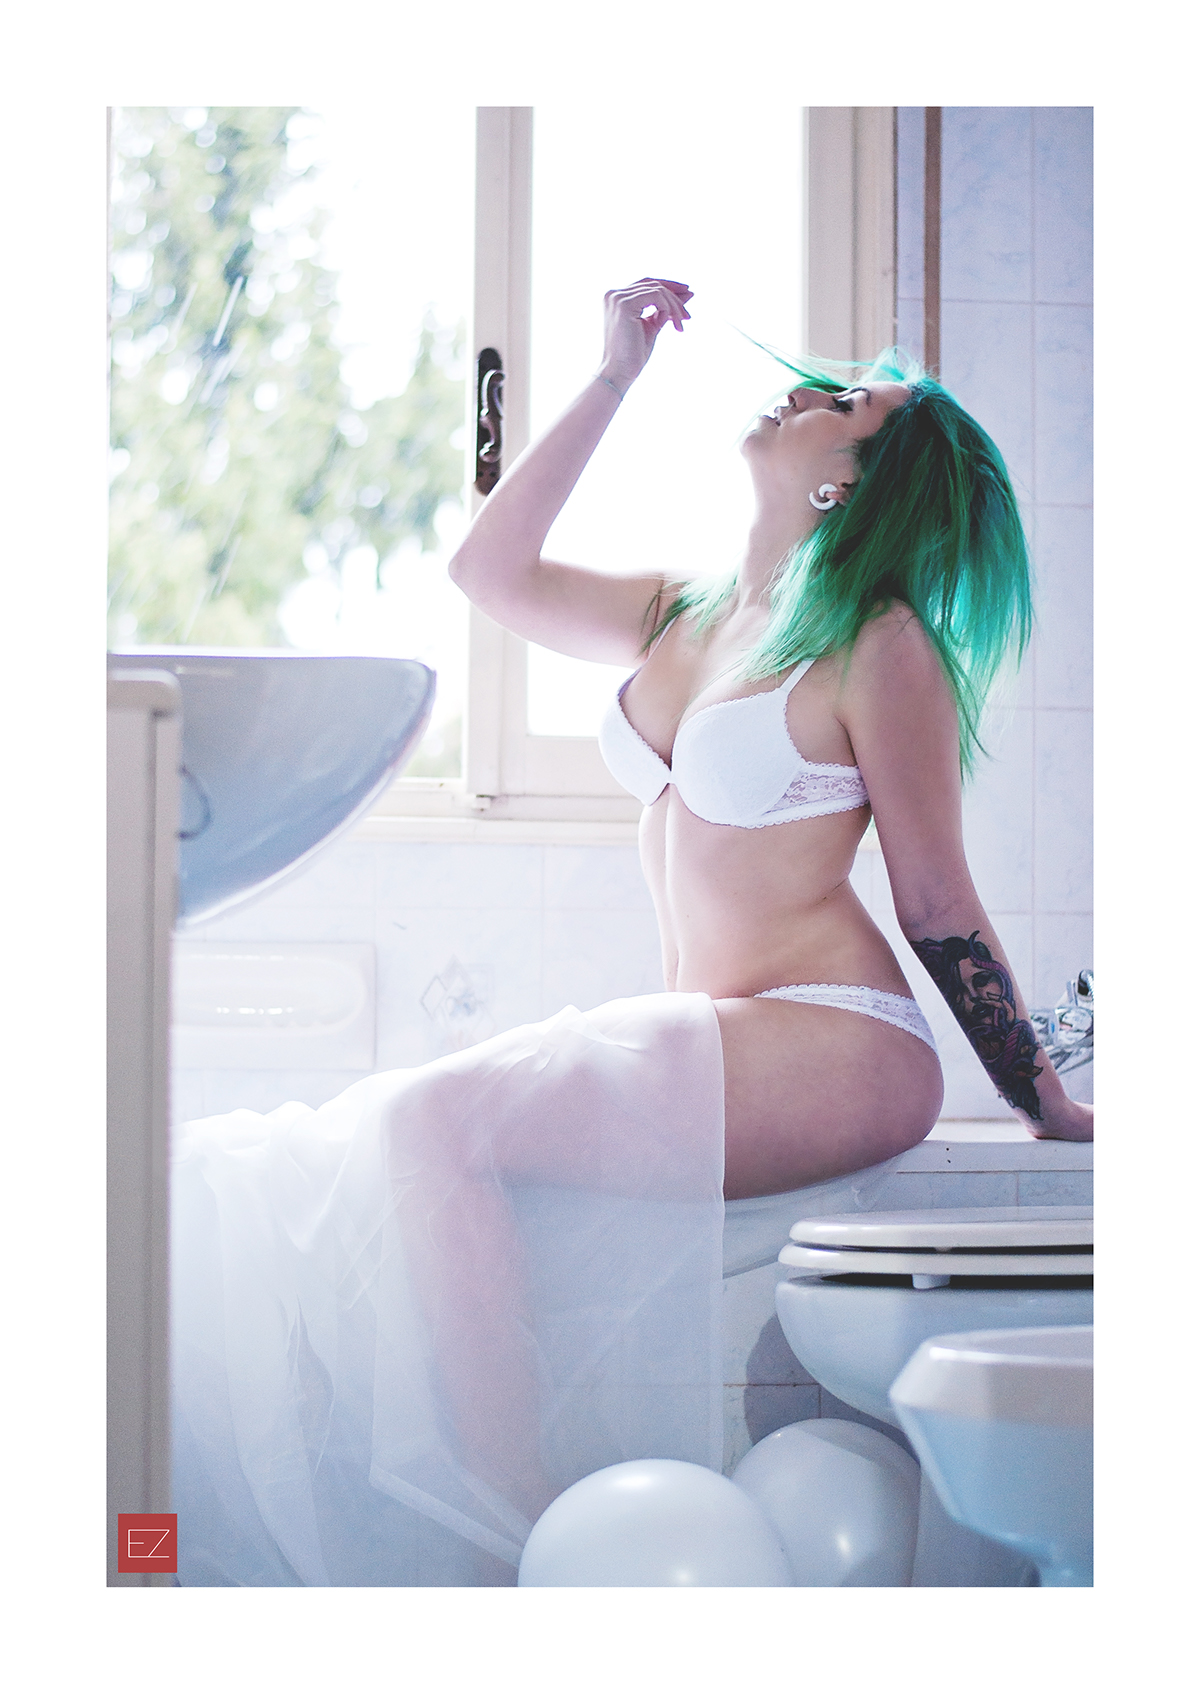 hopefulsuicidegirl suicidegirl nude greenhair model girl Window bath